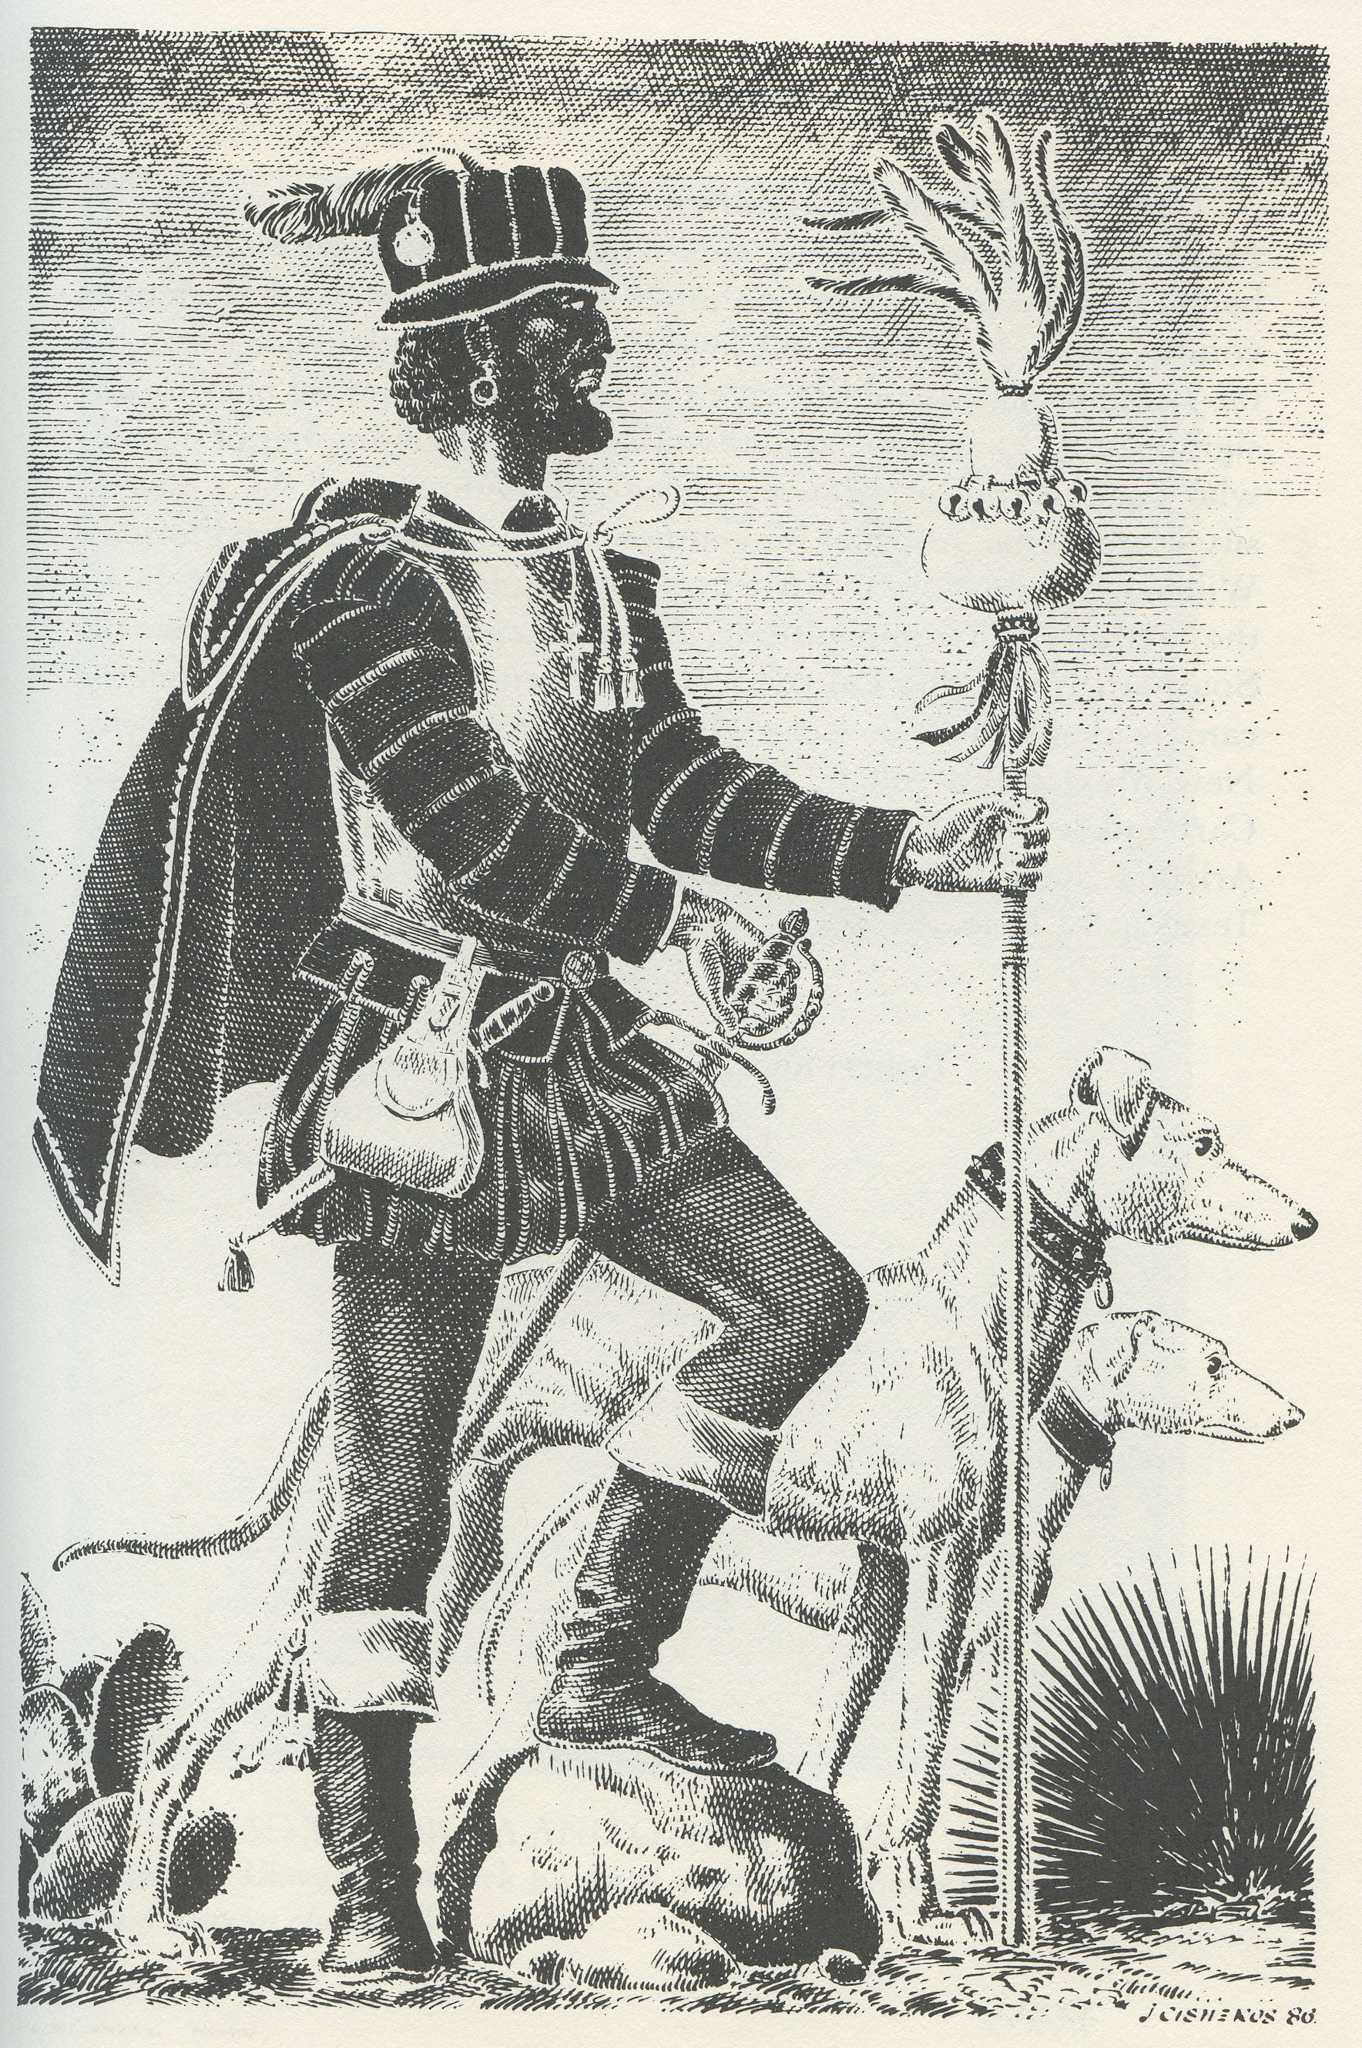 Black and white silhouette of Esteban de Dorantes